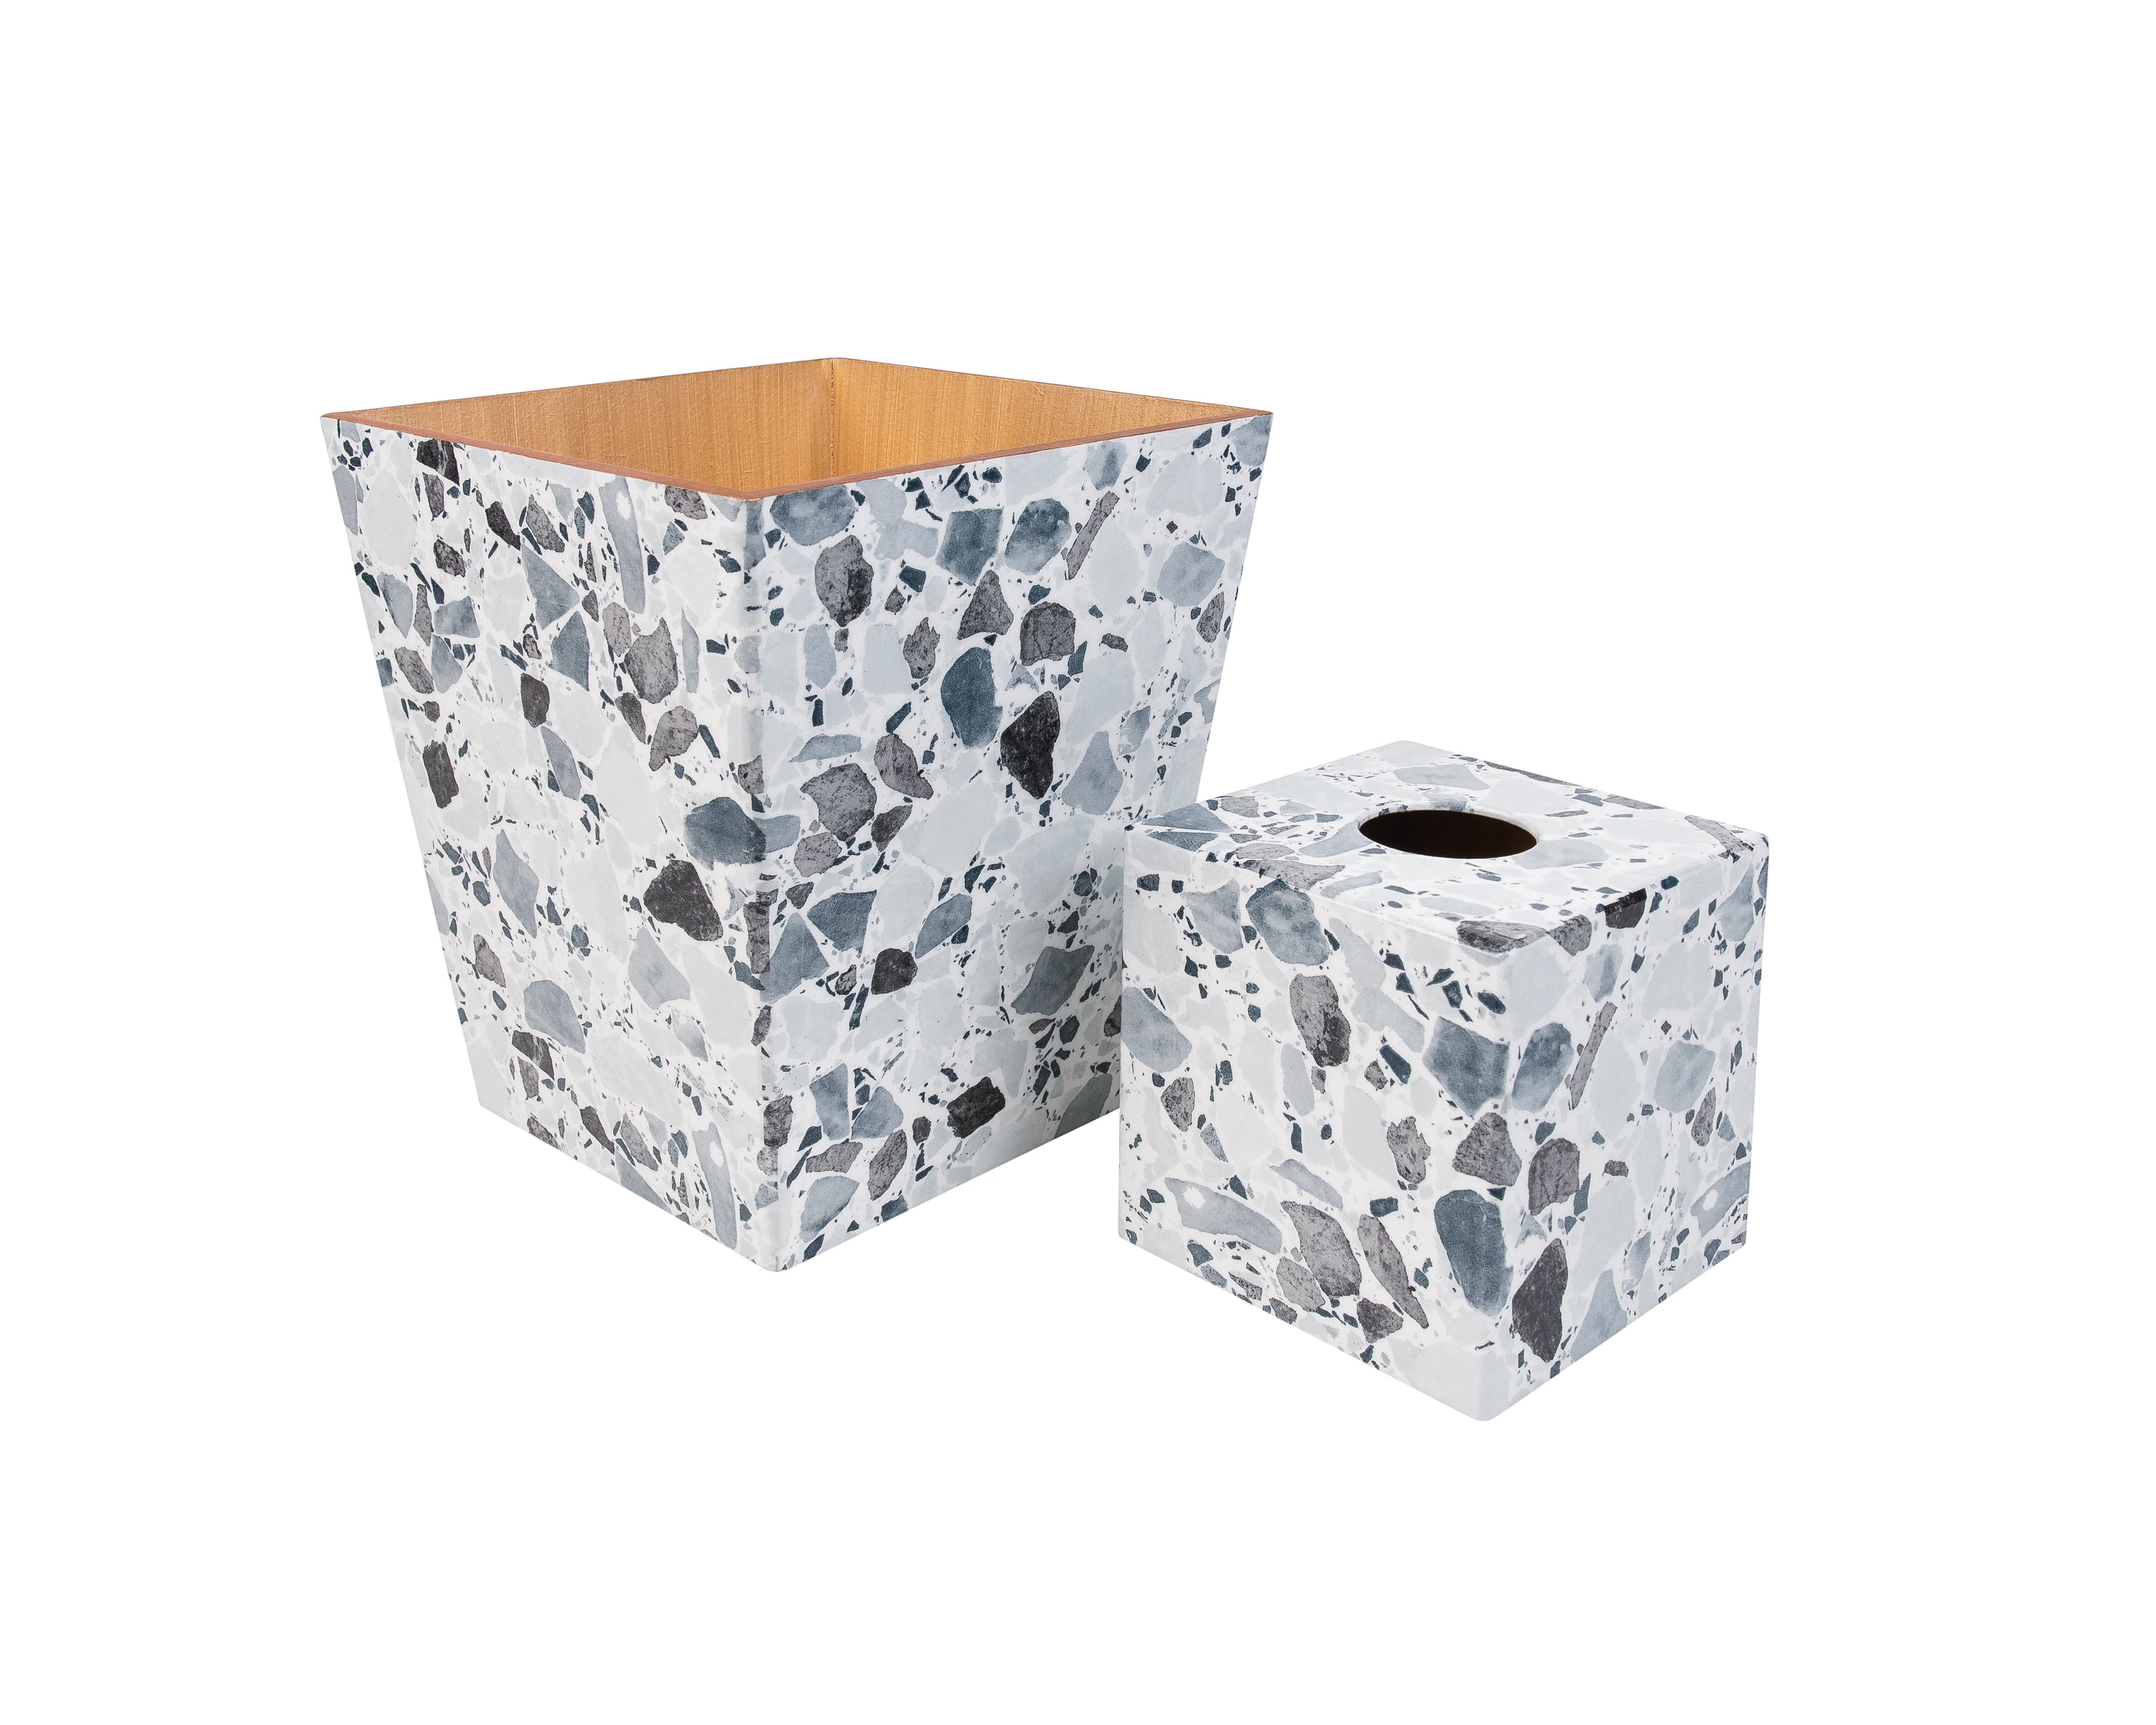 Terrazzo Grey Tissue box cover and waste paper bin set